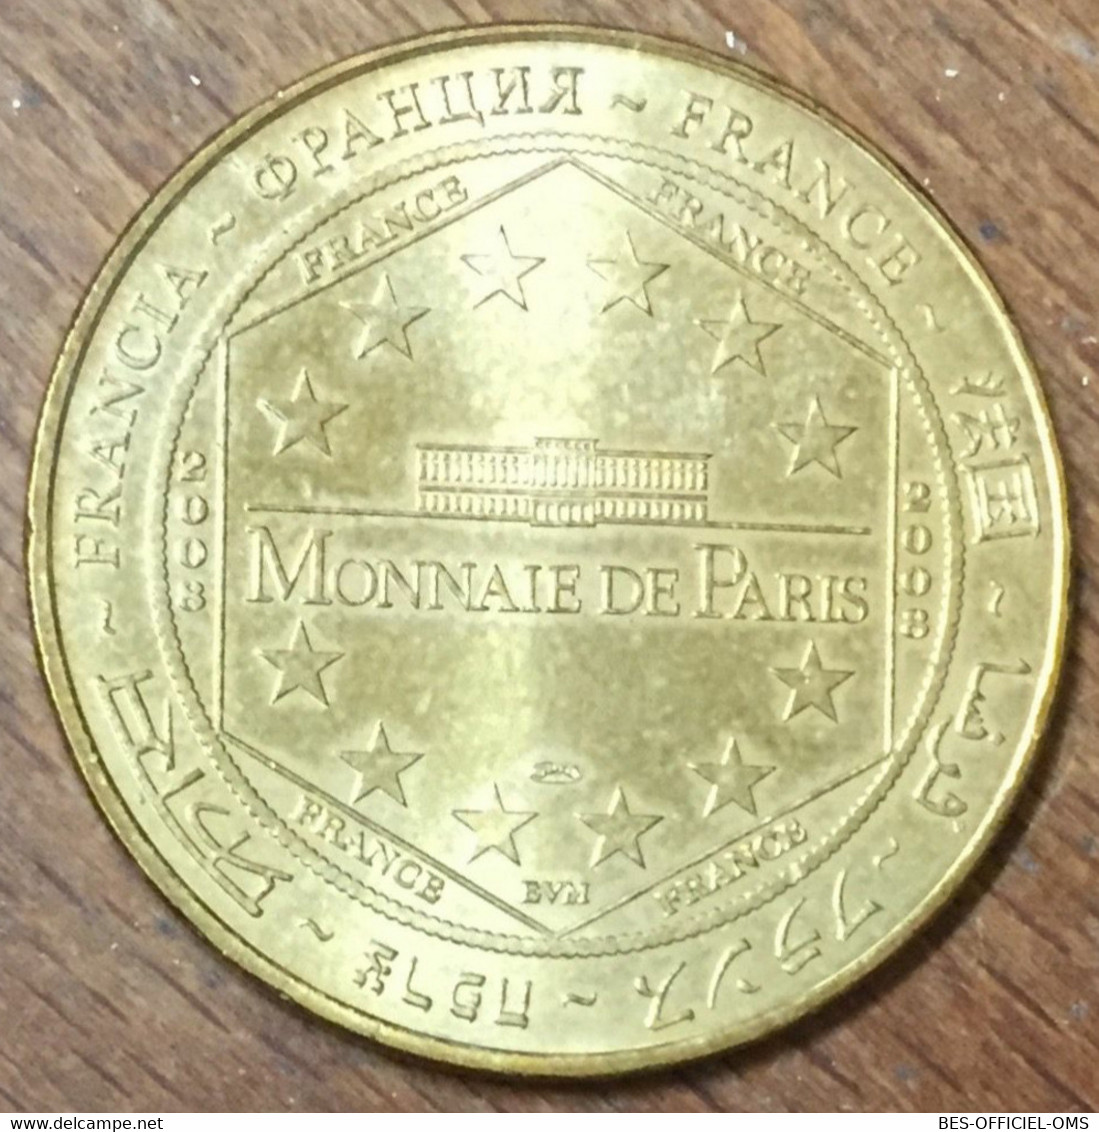 14 CAEN LE MÉMORIAL 20 ANS MDP 2008 MÉDAILLE SOUVENIR MONNAIE DE PARIS JETON TOURISTIQUE MEDALS COINS TOKENS - 2008